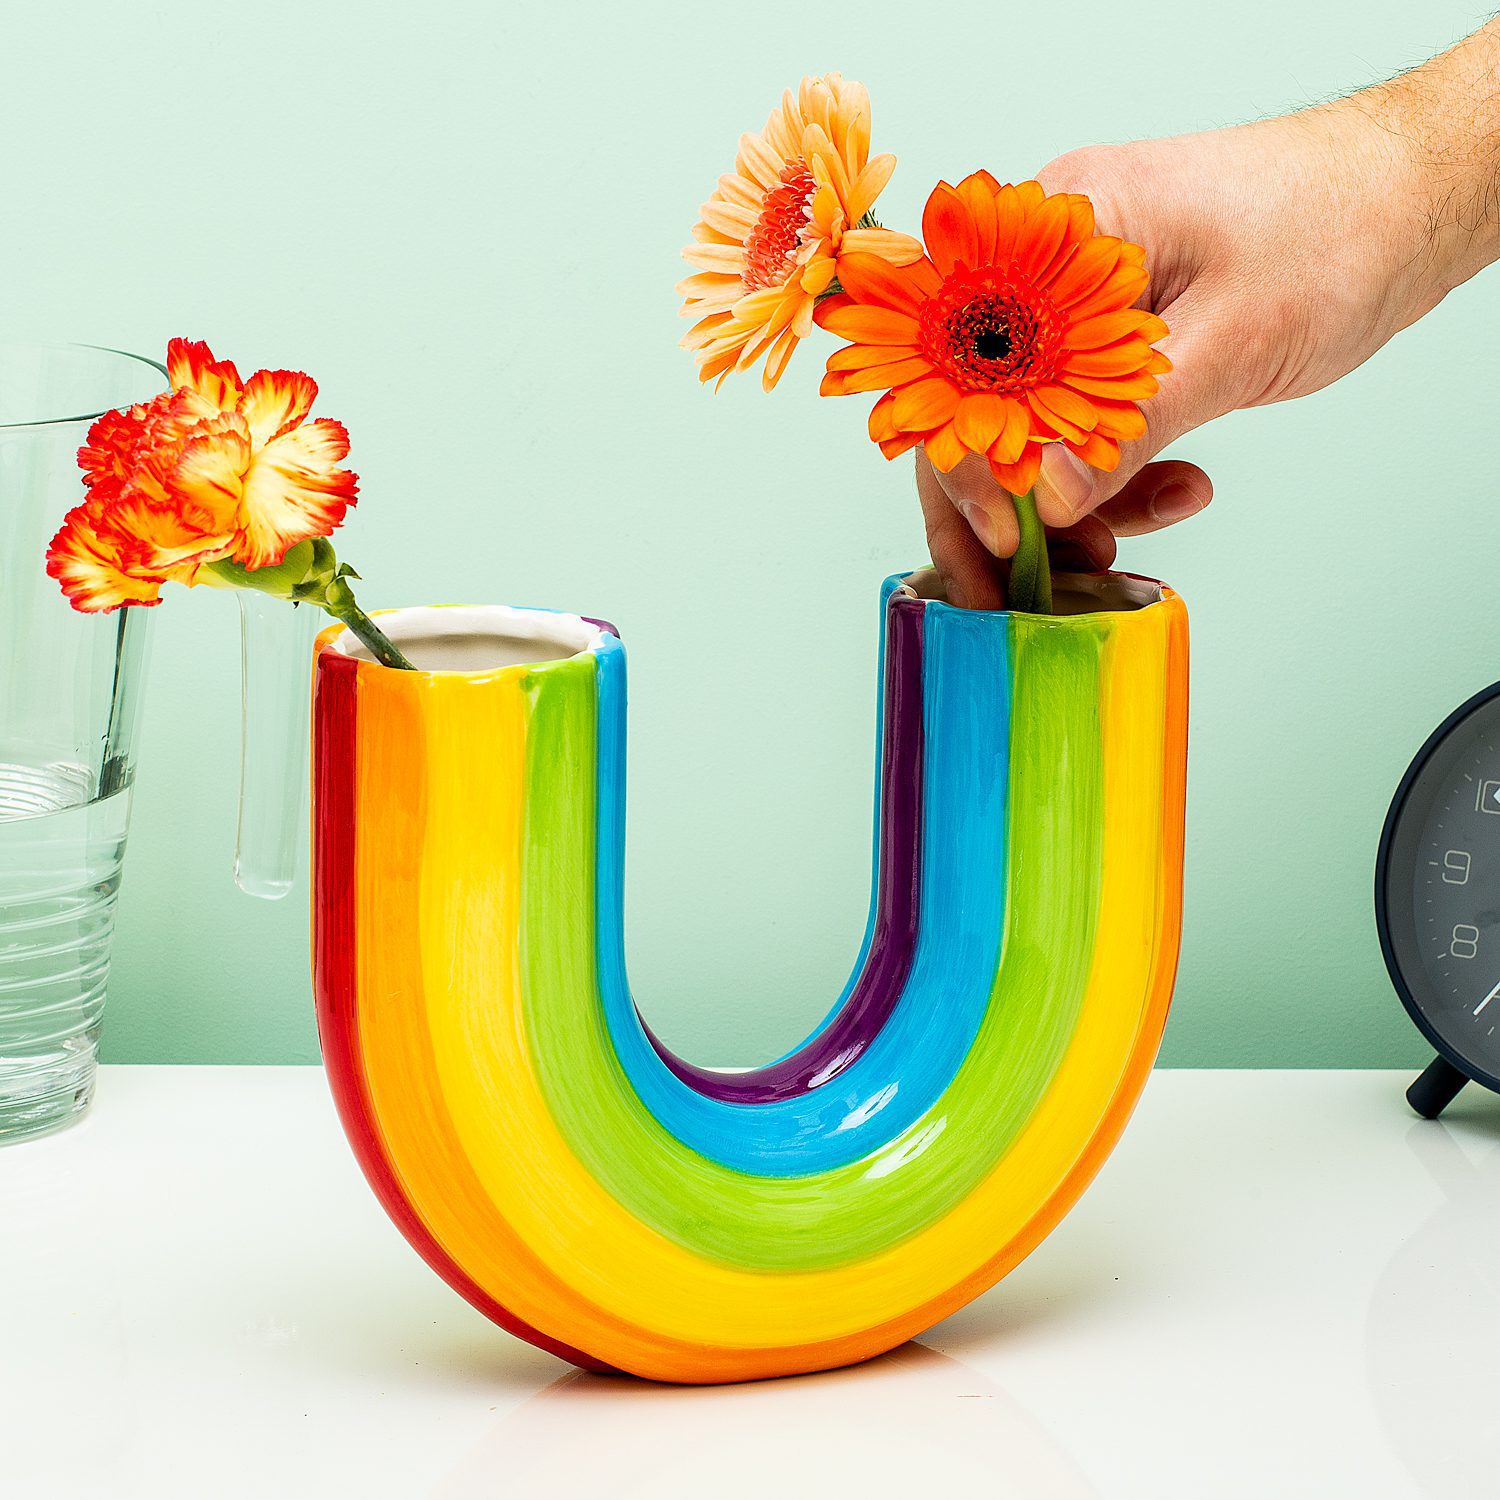 新款简约香蕉花瓶彩虹花瓶插花创意家居客厅装饰摆件树脂工艺品